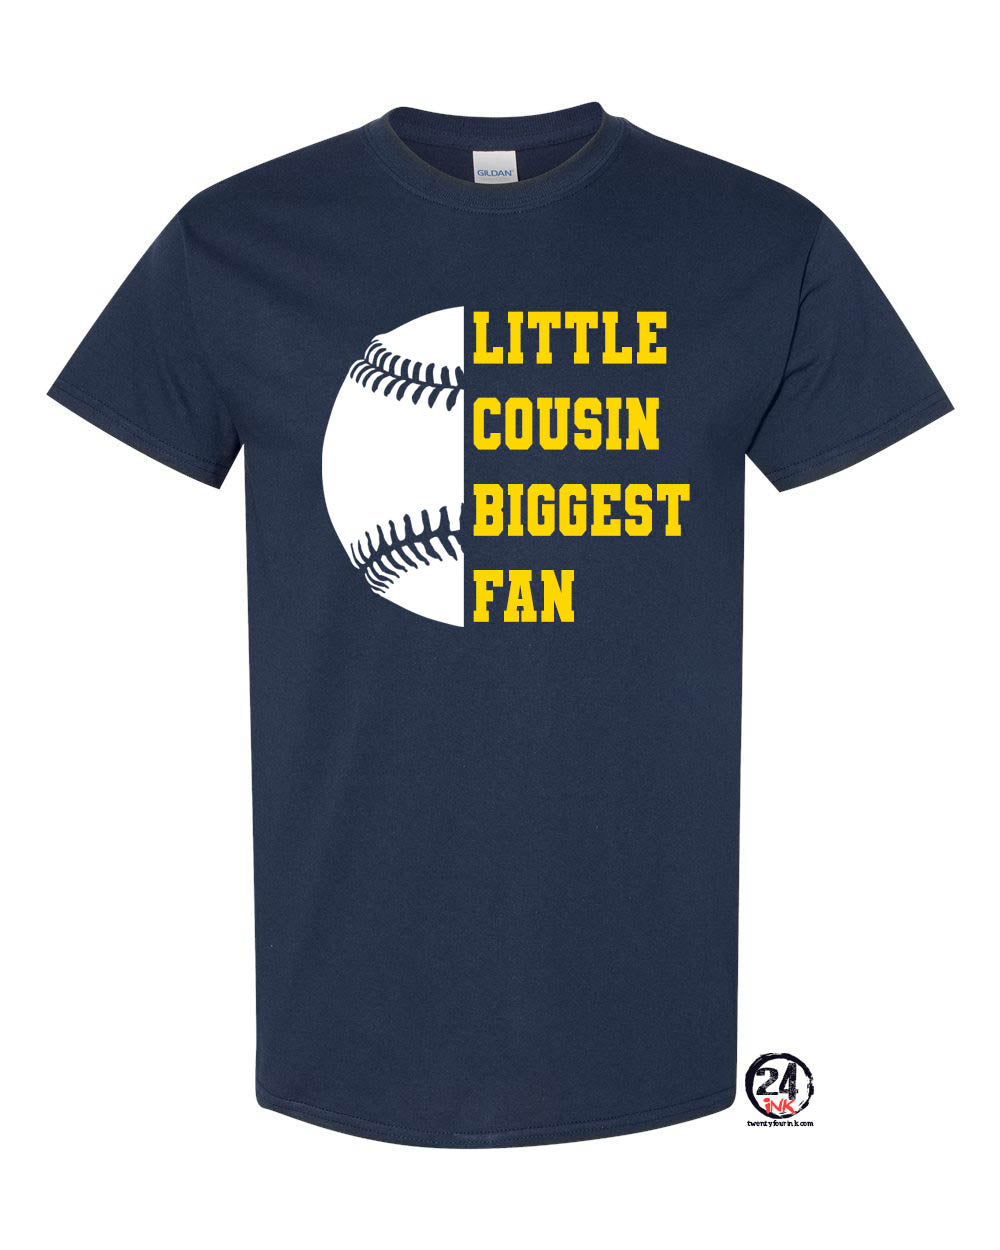 Little Cousin Biggest Fan t-shirt